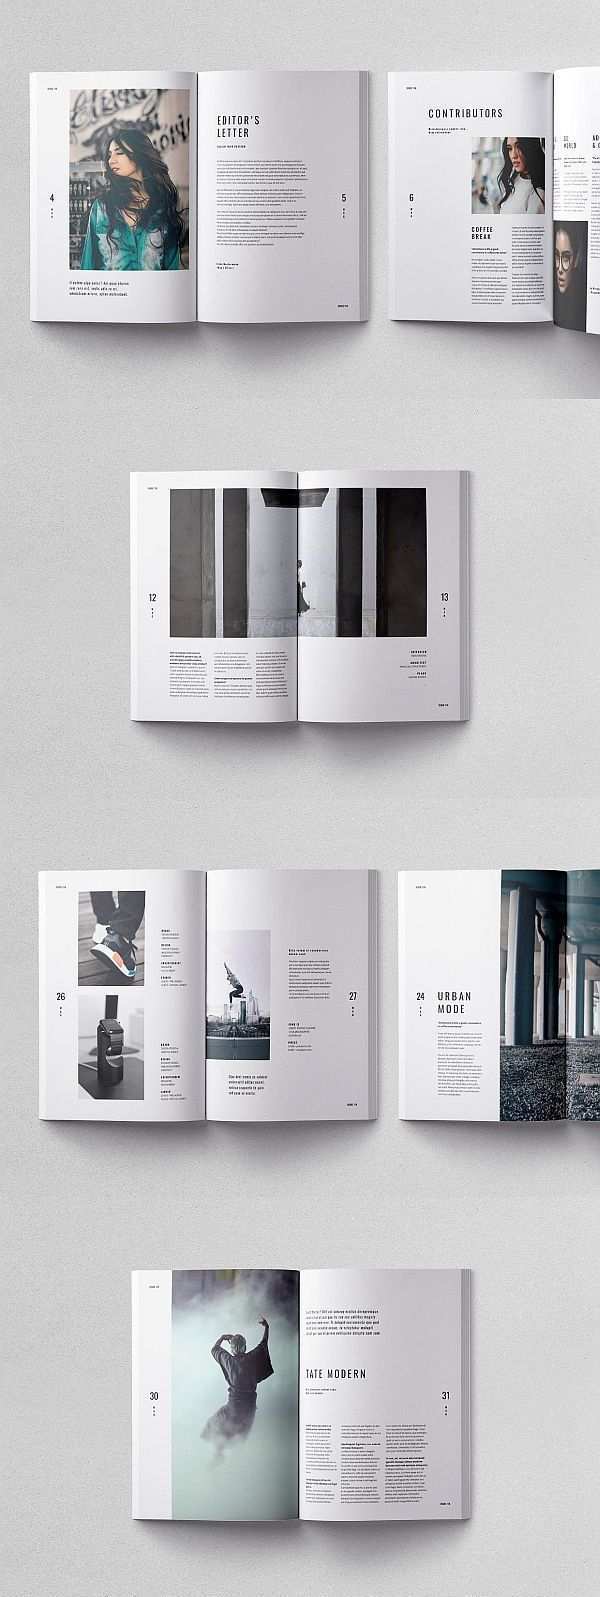 Kult Magazin Vorlage Kultmagazinvorlage Kultmagazinvorlage Portfolio Magazinelayouts In 2020 Buch Design Buch Layouts Buch Und Zeitschriftendesign